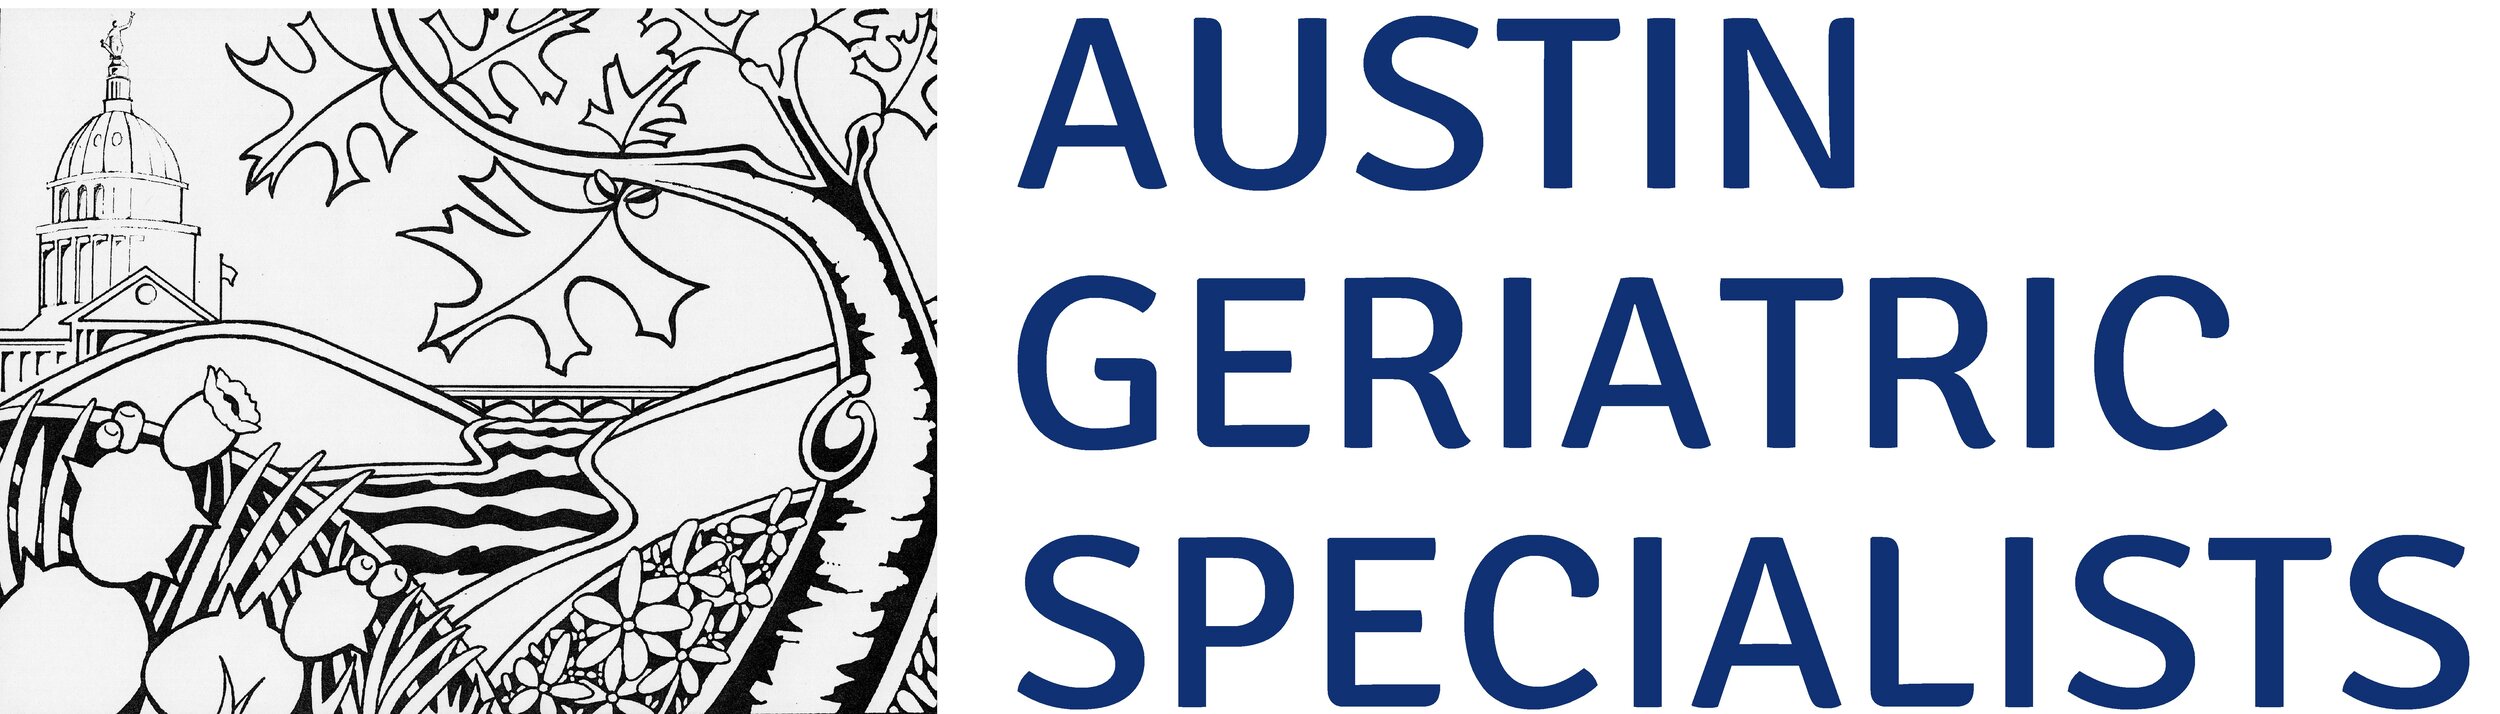 Austin Geriatric Specialists logo